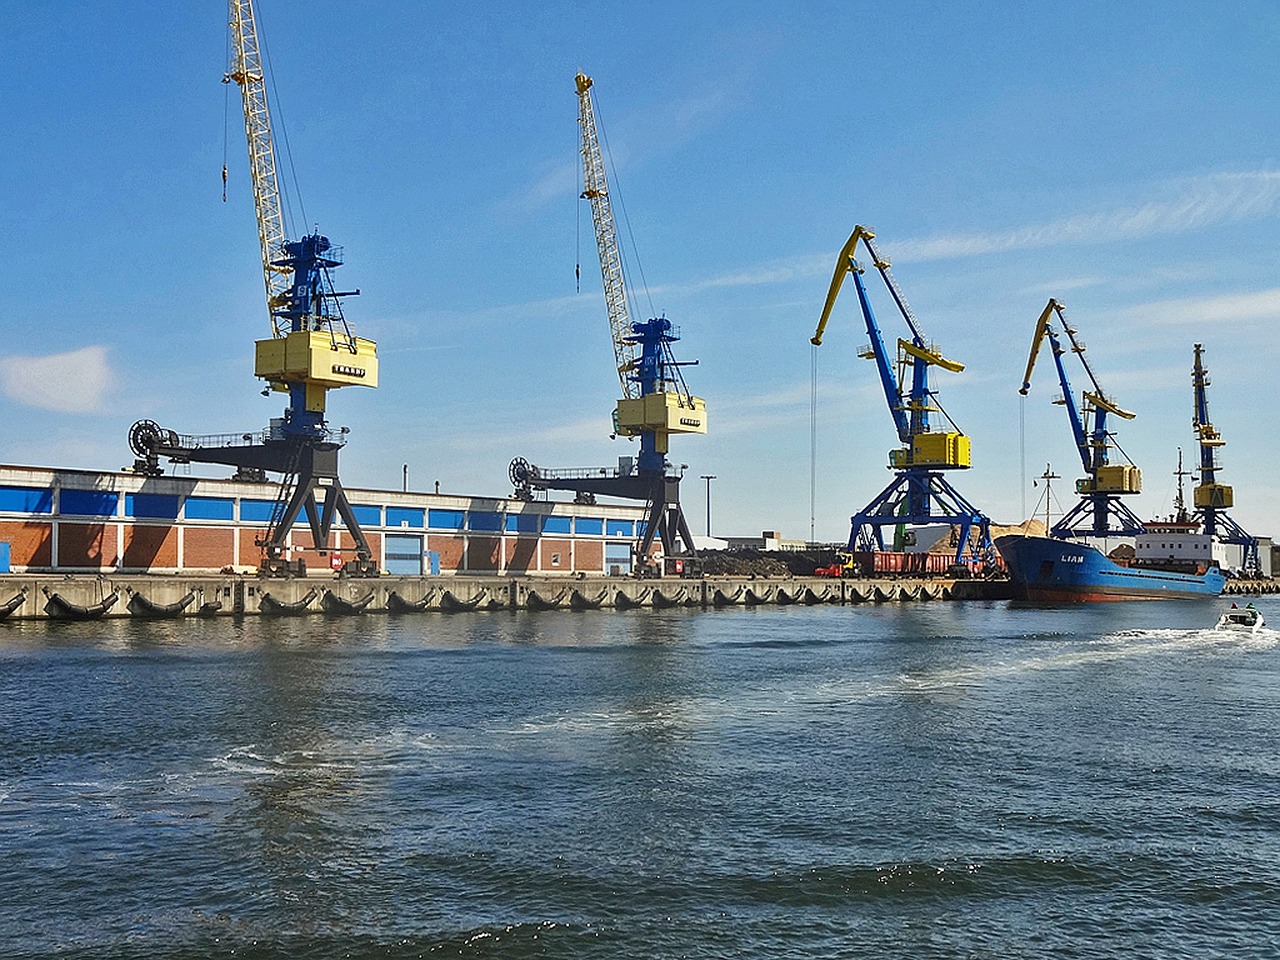 cranes industriehafen wismar free photo